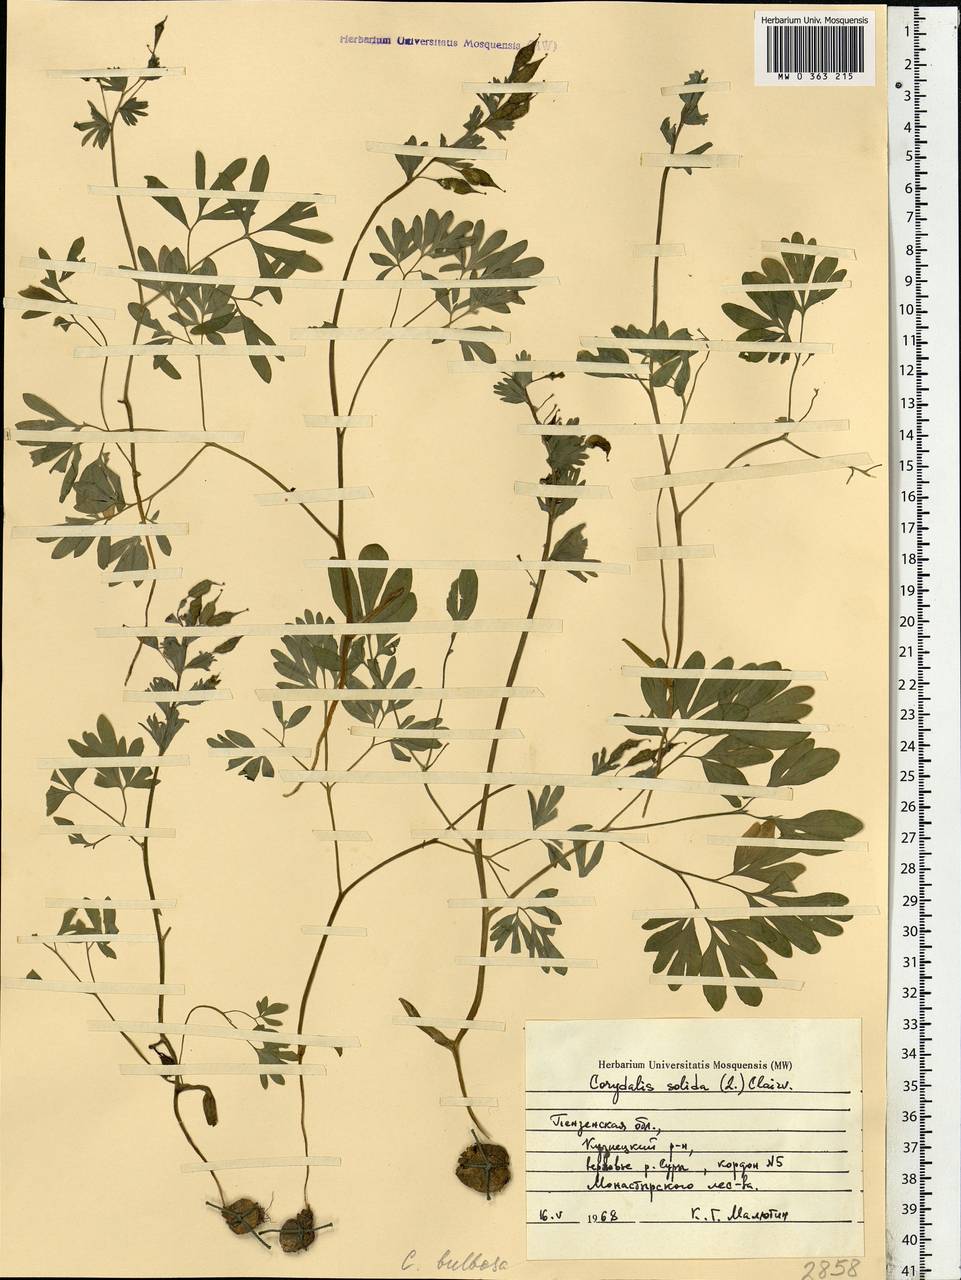 Corydalis solida (L.) Clairv., Eastern Europe, Middle Volga region (E8) (Russia)